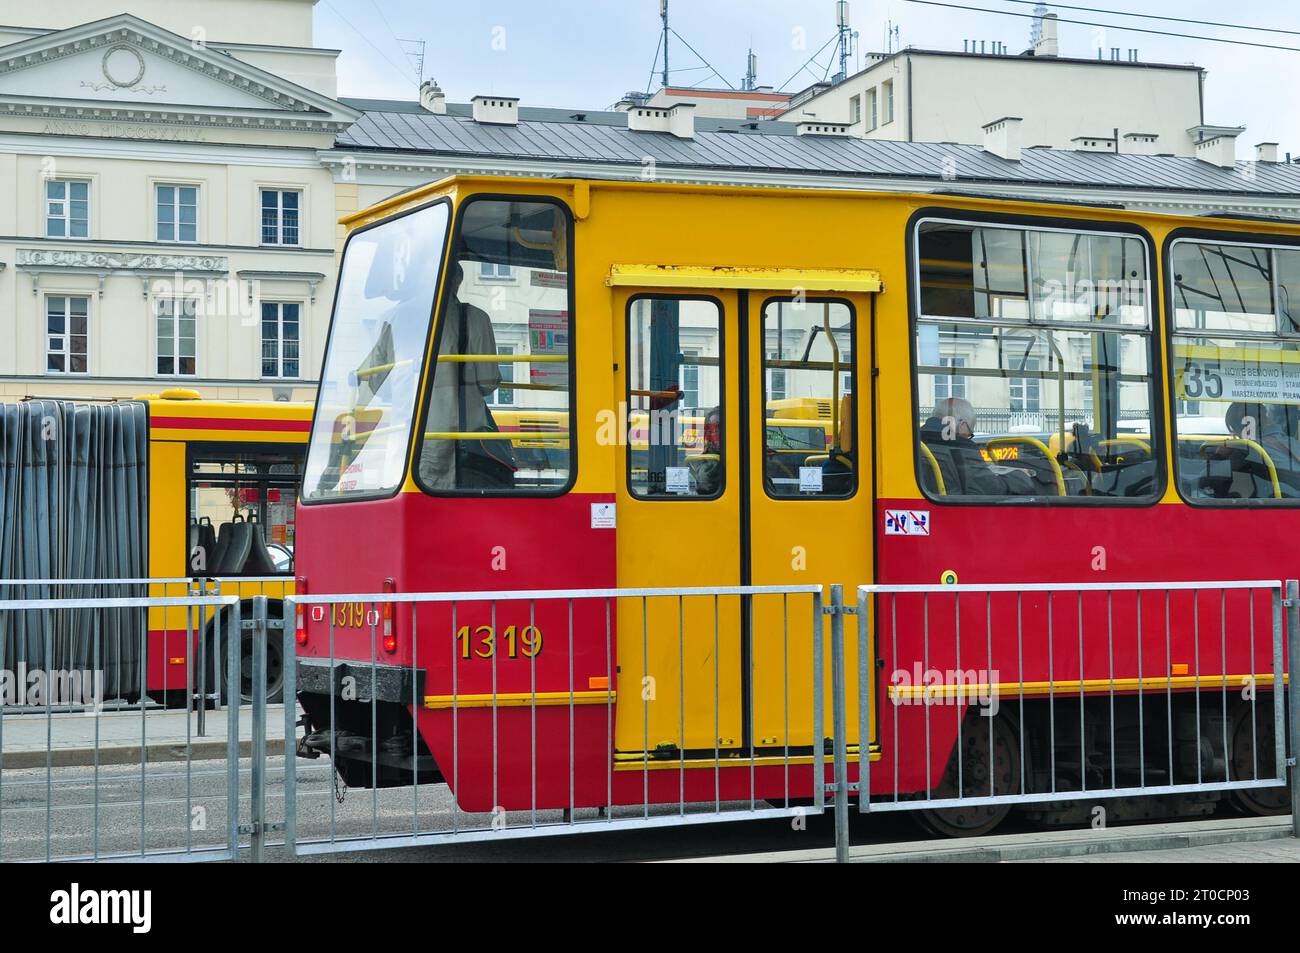 Vieux tram rouge et jaune #1319 desservant Varsovie Tram Line #35, près de Plac Krasińskich, Varsovie, Pologne Banque D'Images